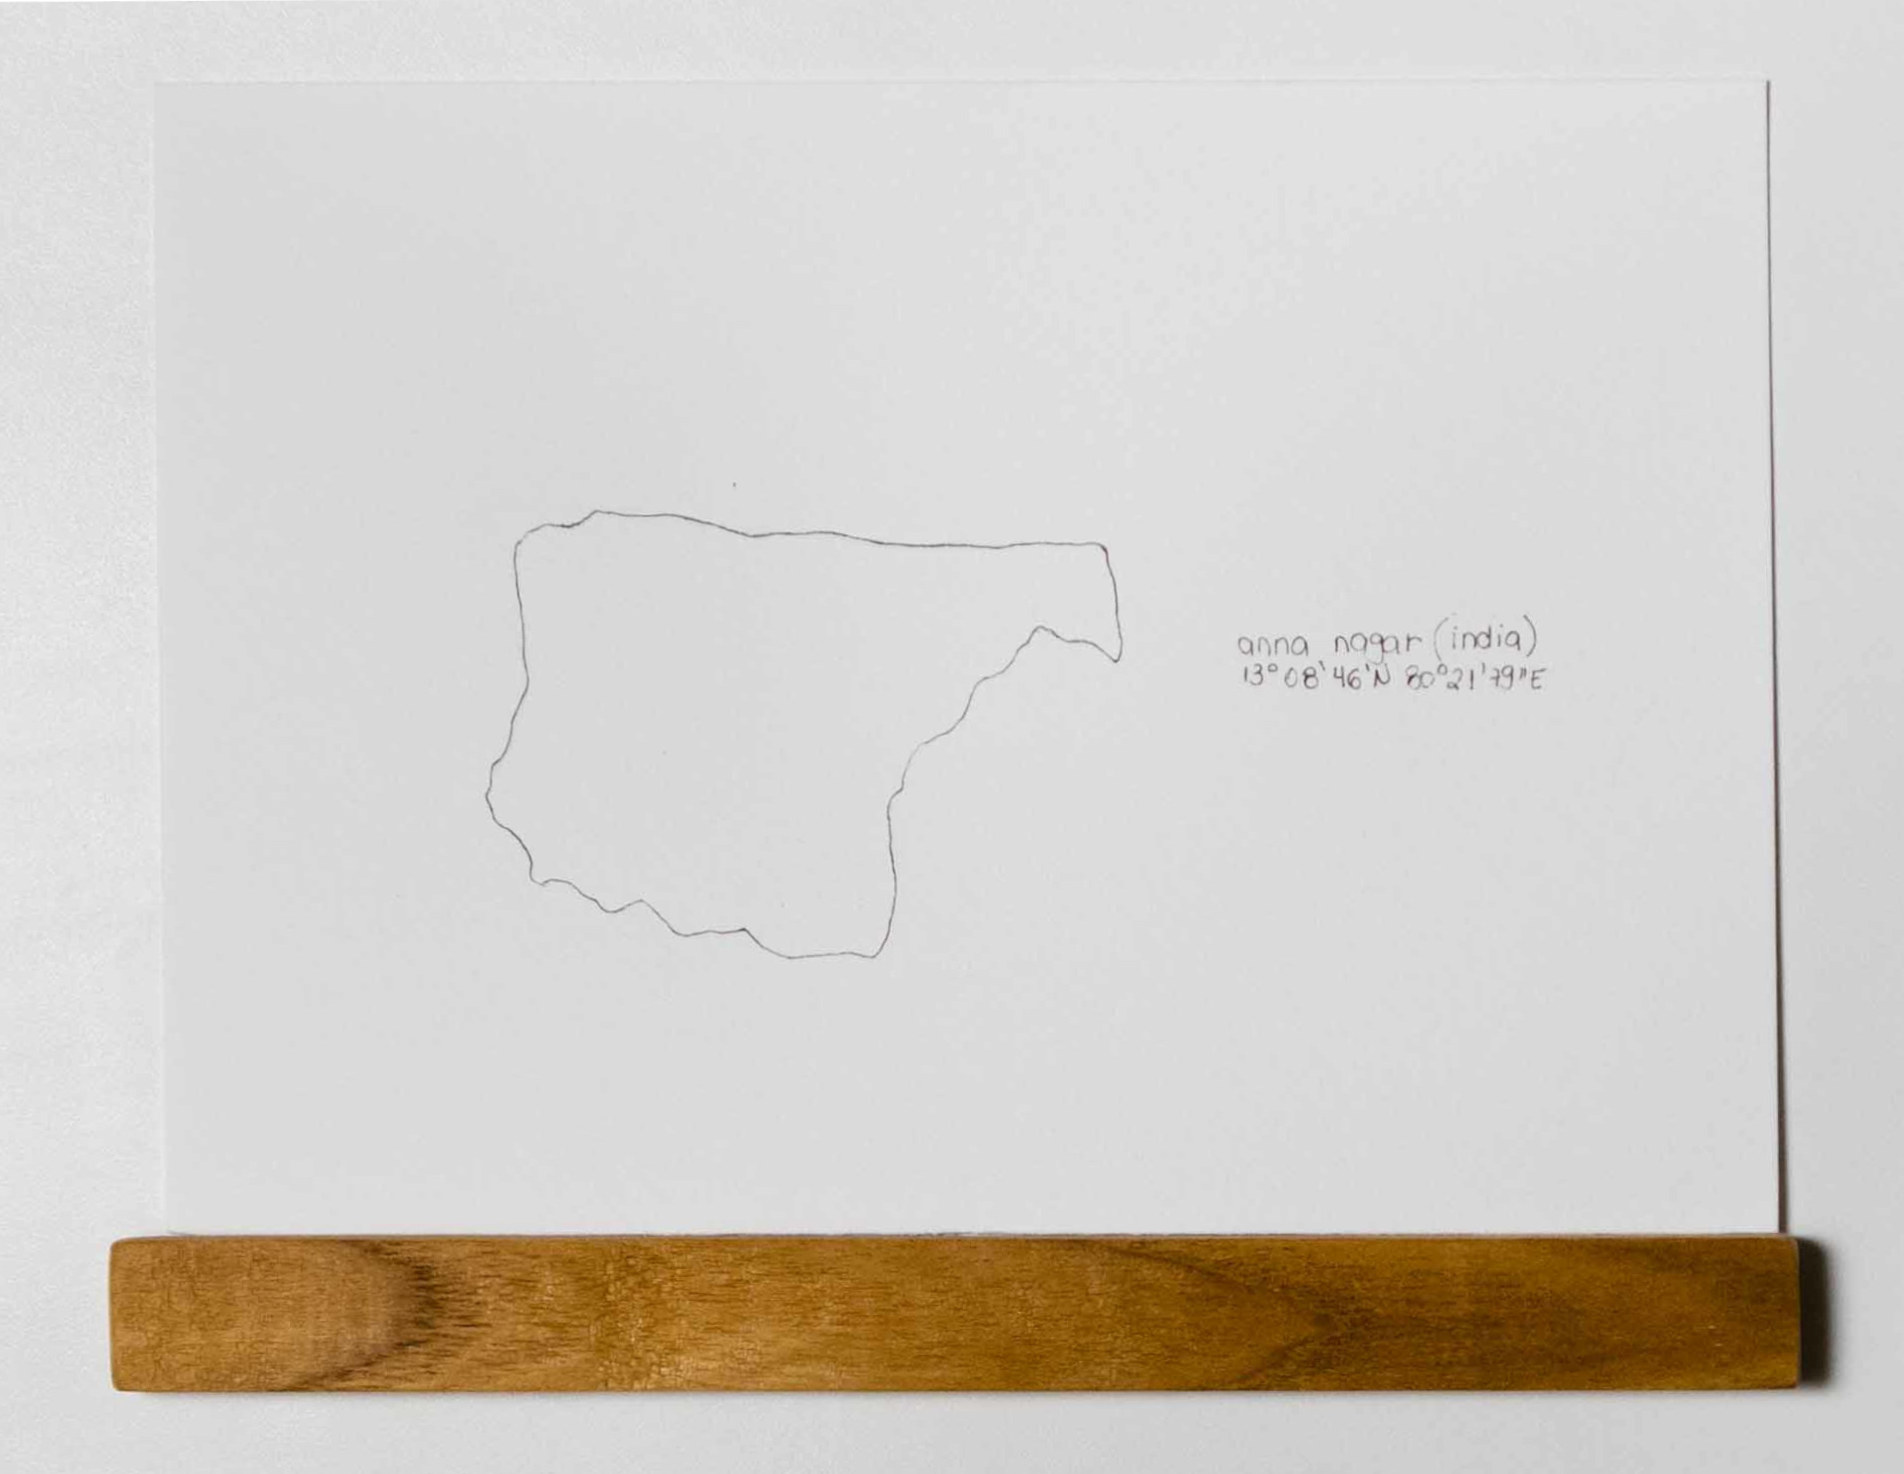 Série Territórios Anna, Anna Moraes, 2020. Desenho, caneta sobre papel 300g, 20x15cm.